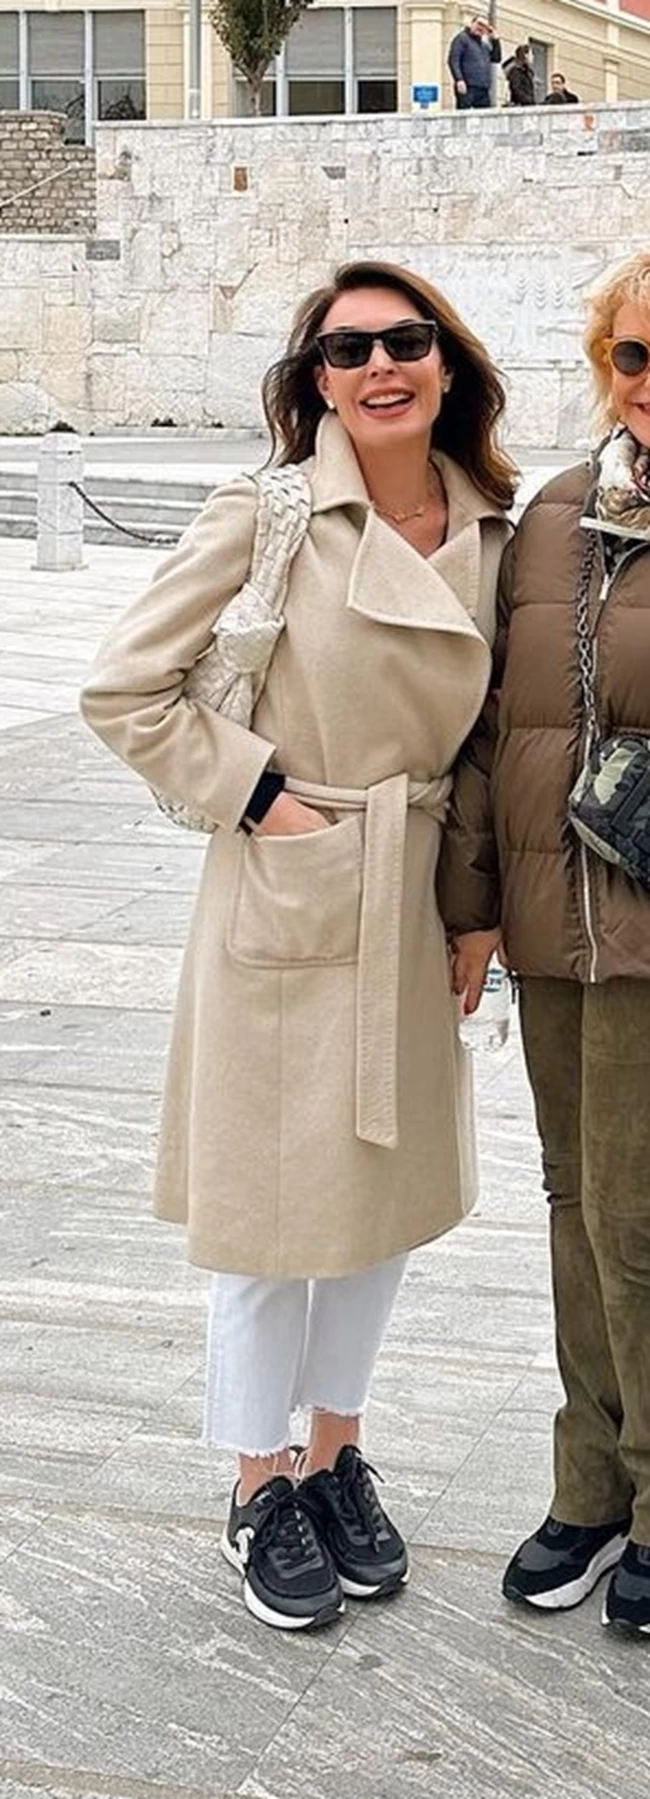 Τατιάνα Στεφανίδου: Στιλάτη στην Καβάλα με μπεζ robe coat - Oι τρεις διαφορετικοί τρόποι που το φόρεσε